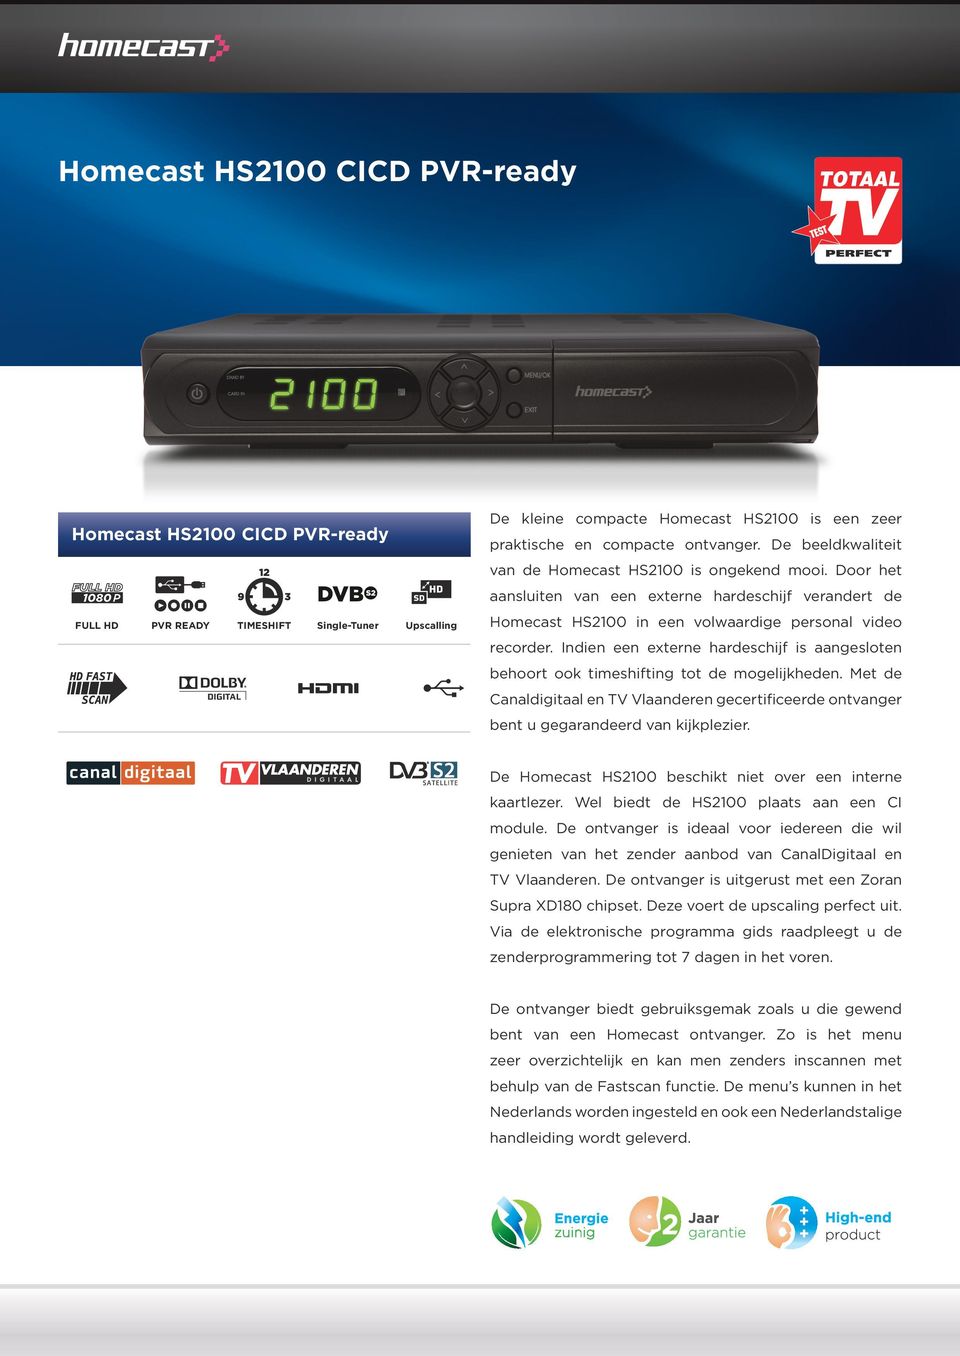 Door het aansluiten van een externe hardeschijf verandert de FULL HD PVR READY Single-Tuner Homecast HS2100 in een volwaardige personal video recorder.